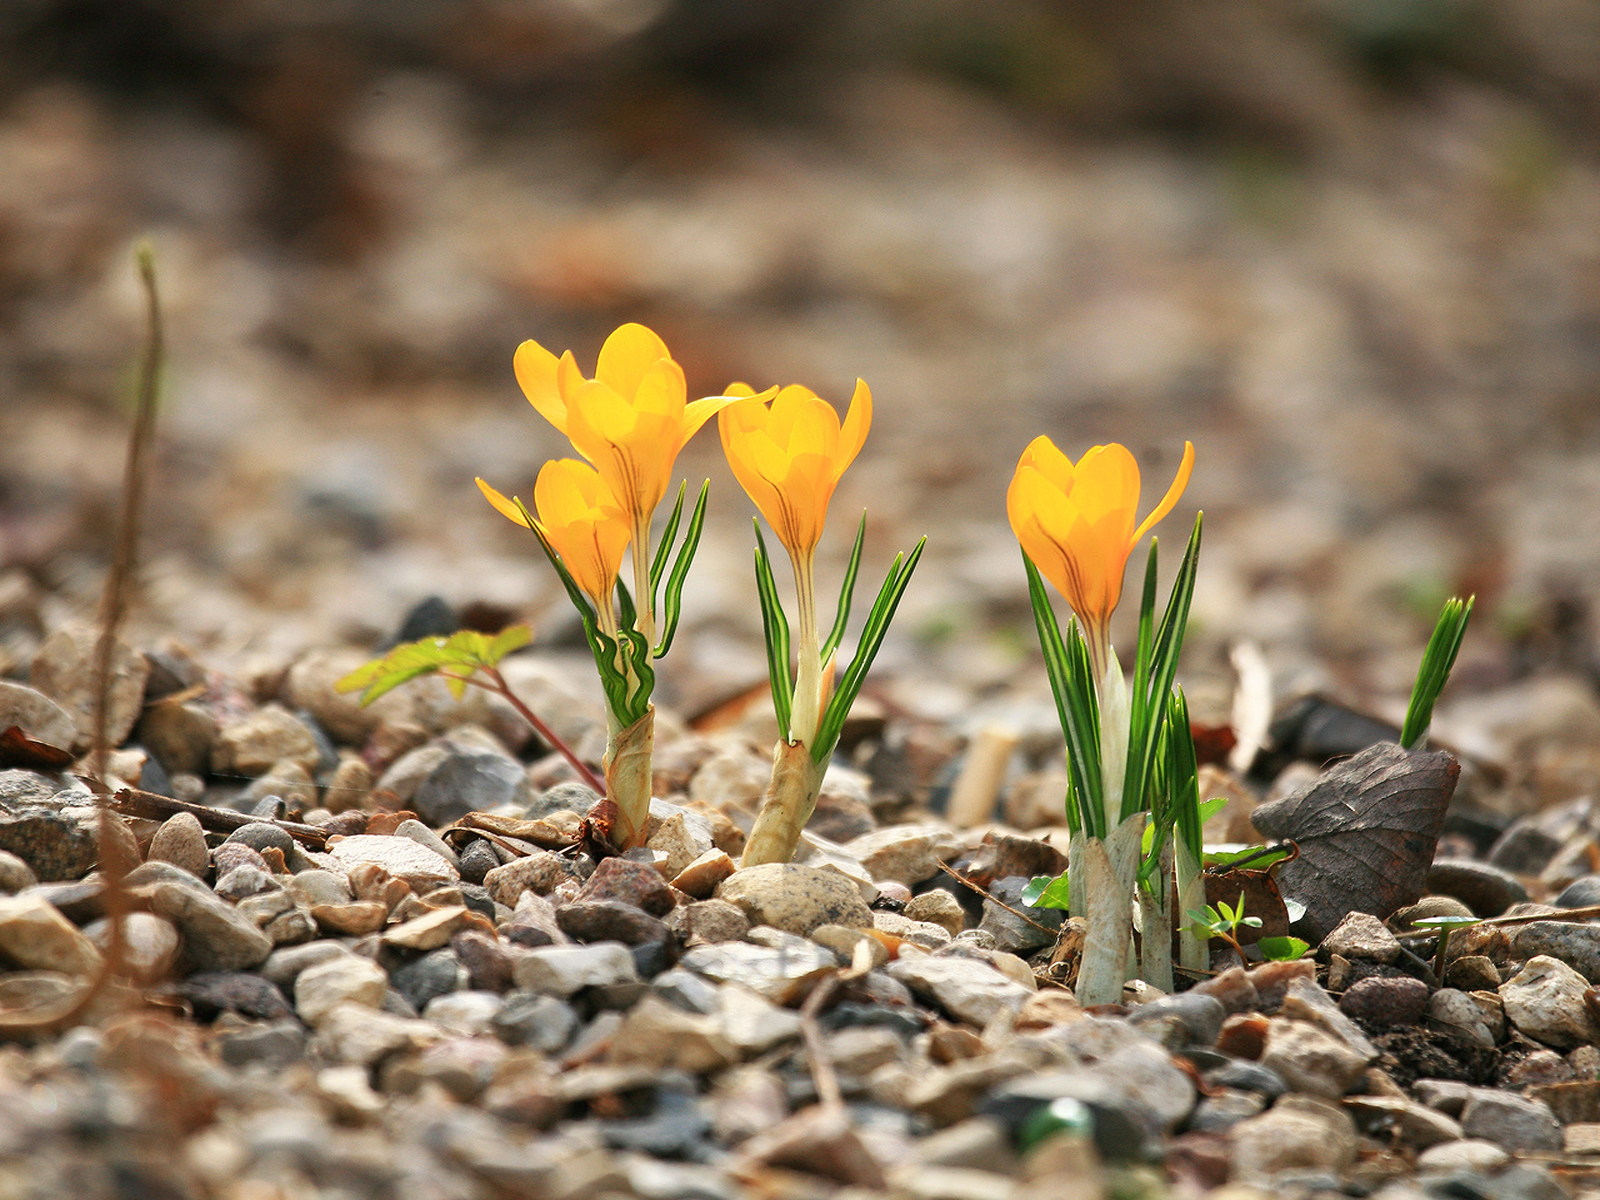 Весенние цветы в природе. Желтые первоцветы крокусы. Бойчечак Гули. Первоцветы (подснежники, крокусы, гиацинты).. Весенние цветы первоцветы Крокус.